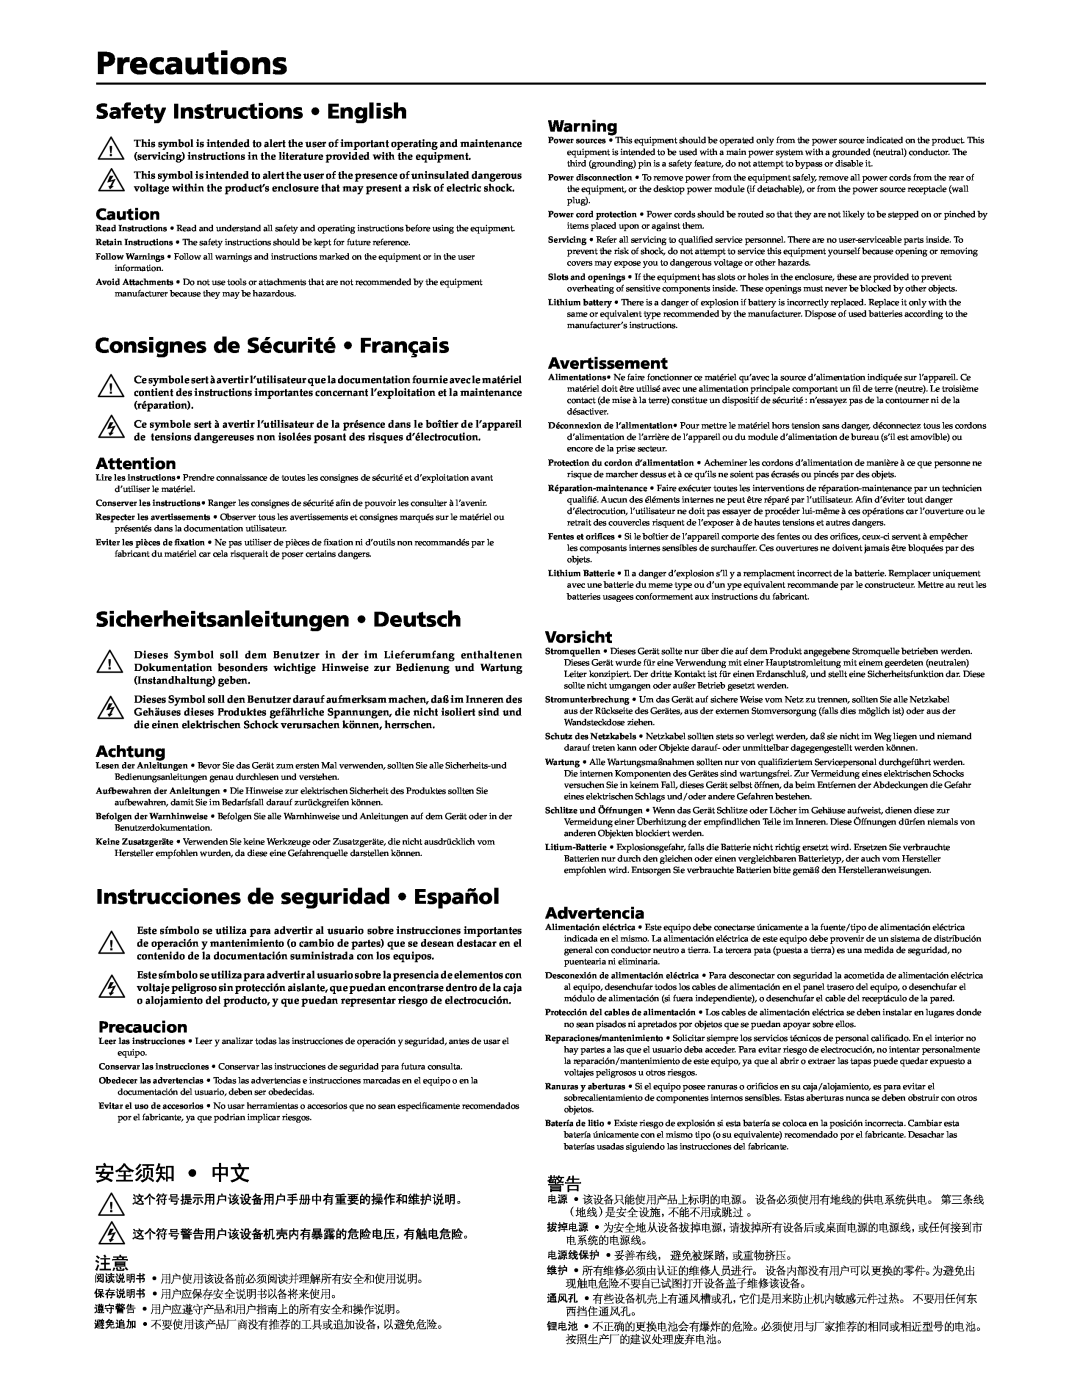 Extron electronic MTPX Plus Series manual Precautions, Safety Instructions English, Consignes de Sécurité Français, 安全须知 中文 